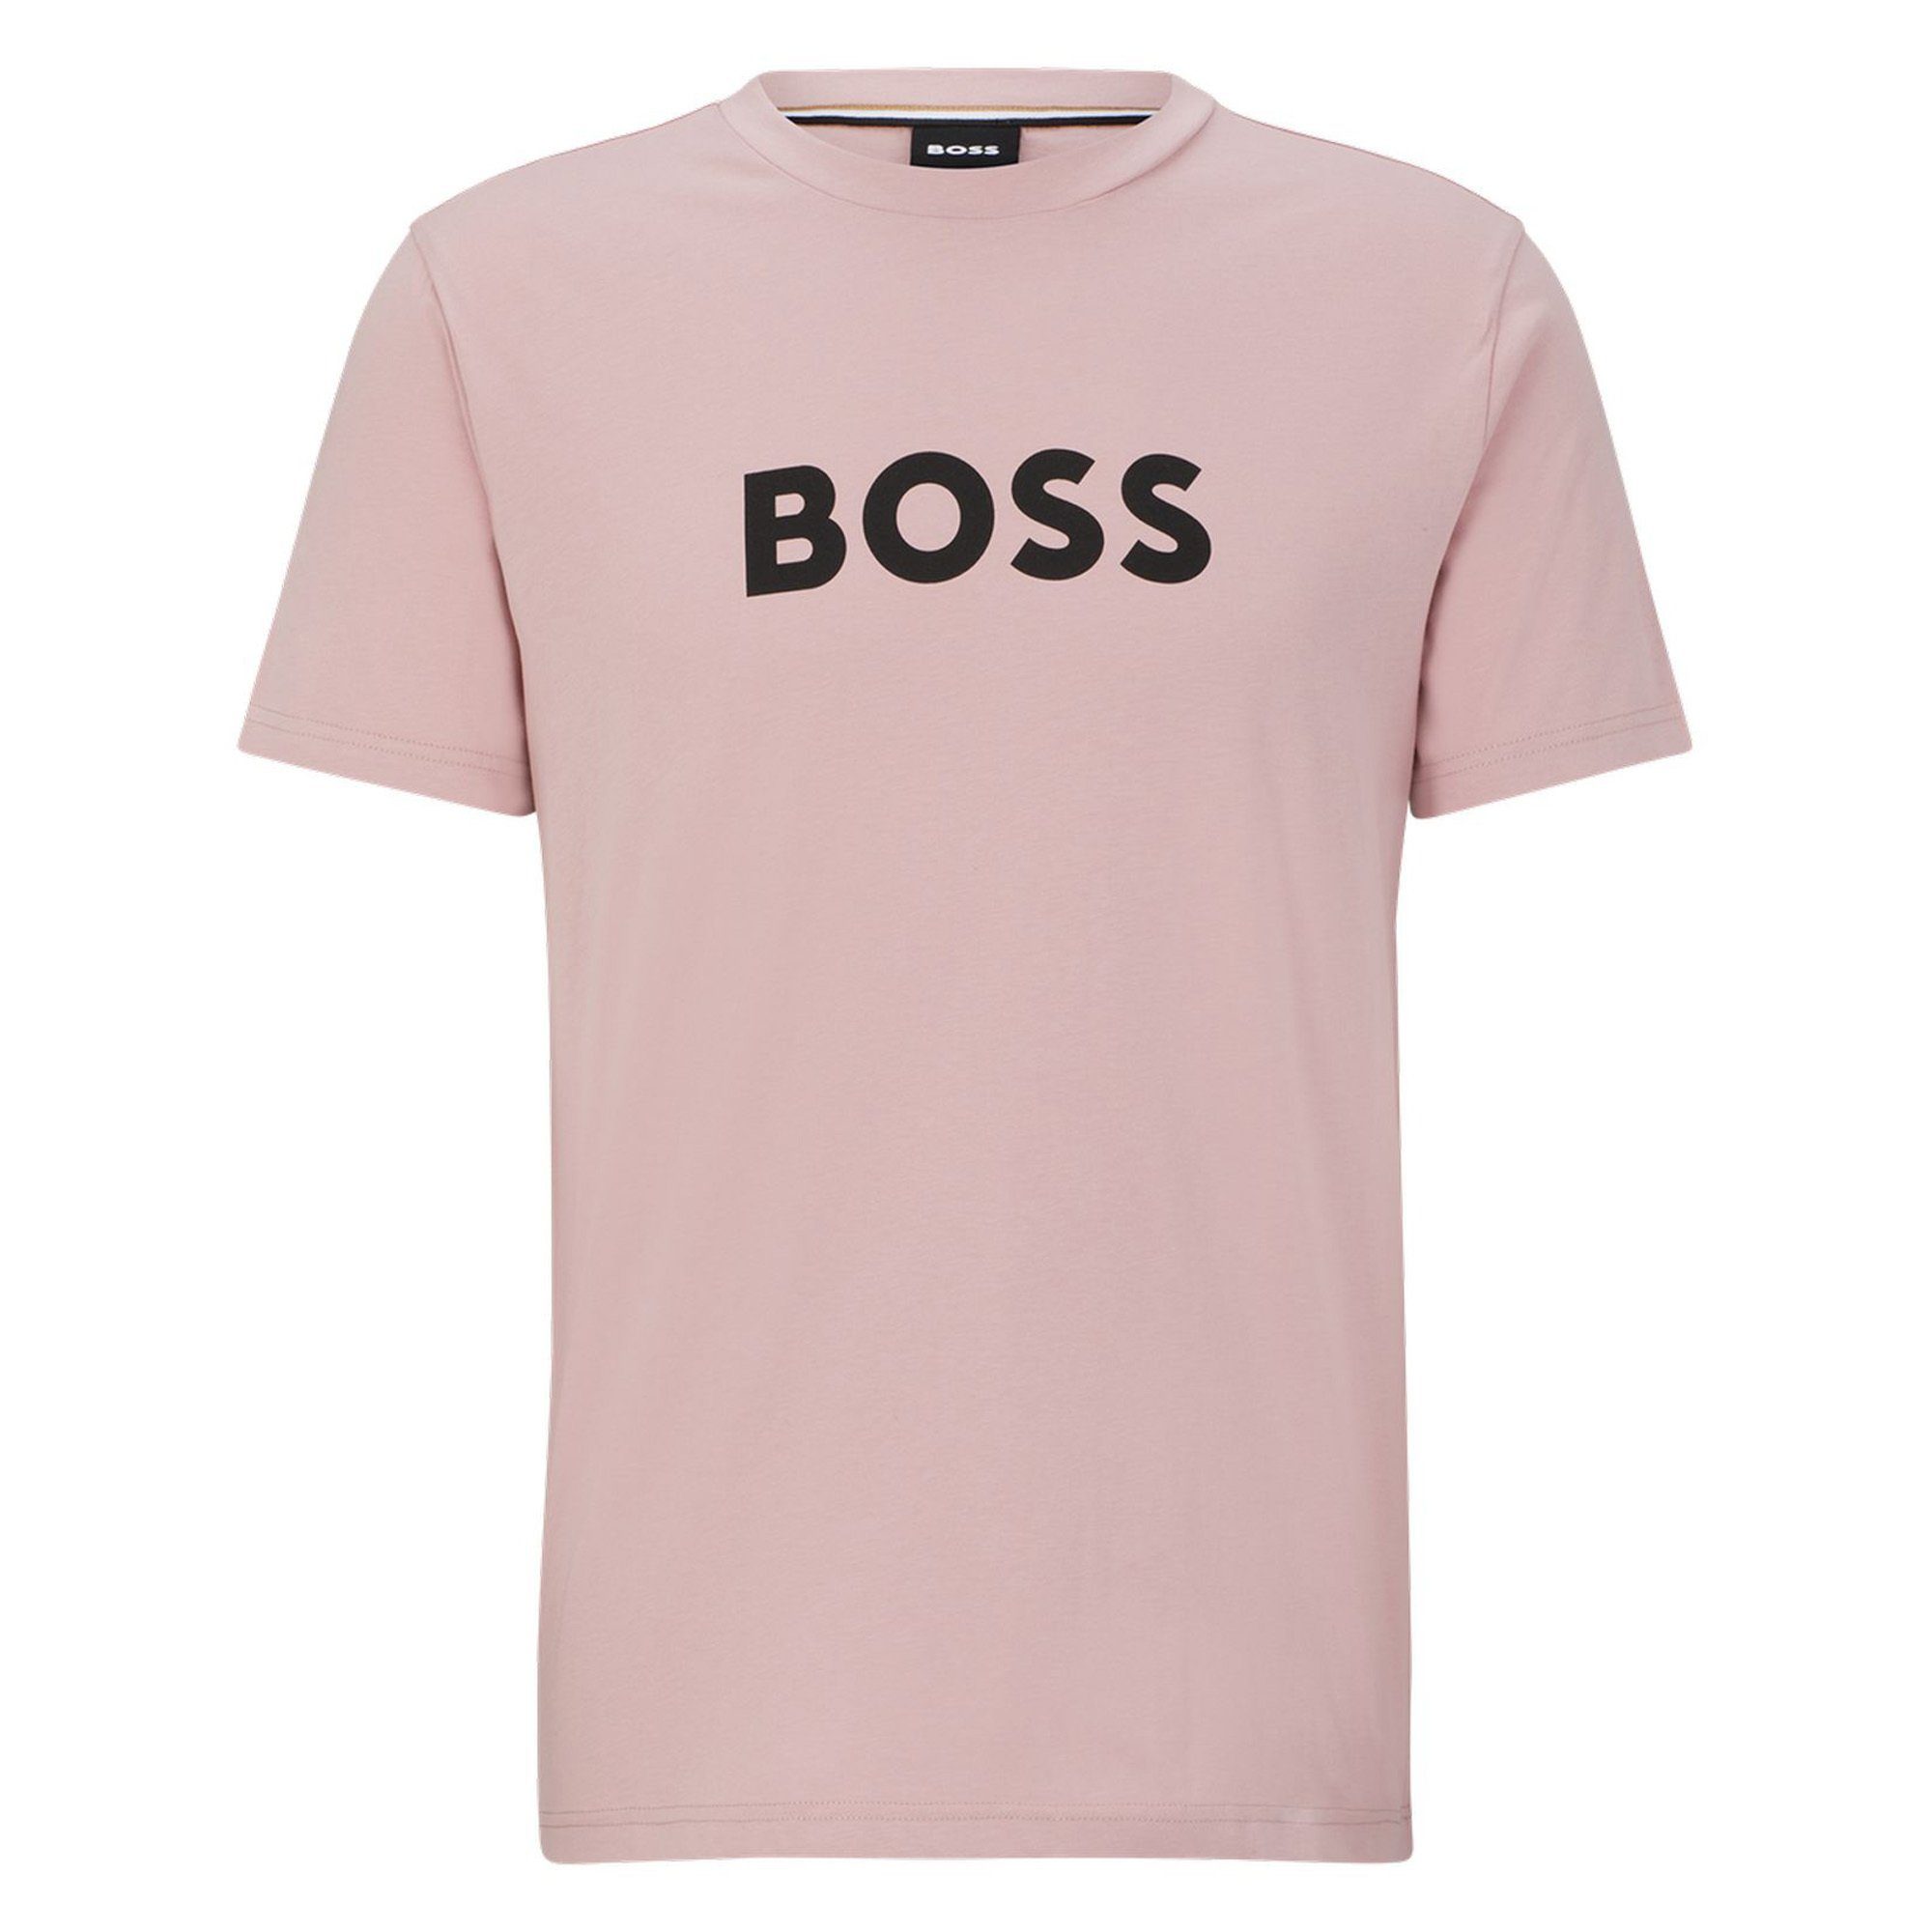 BOSS T-Shirt Herren T-Shirt - T-Shirt RN, Rundhals, Kurzarm Rosa